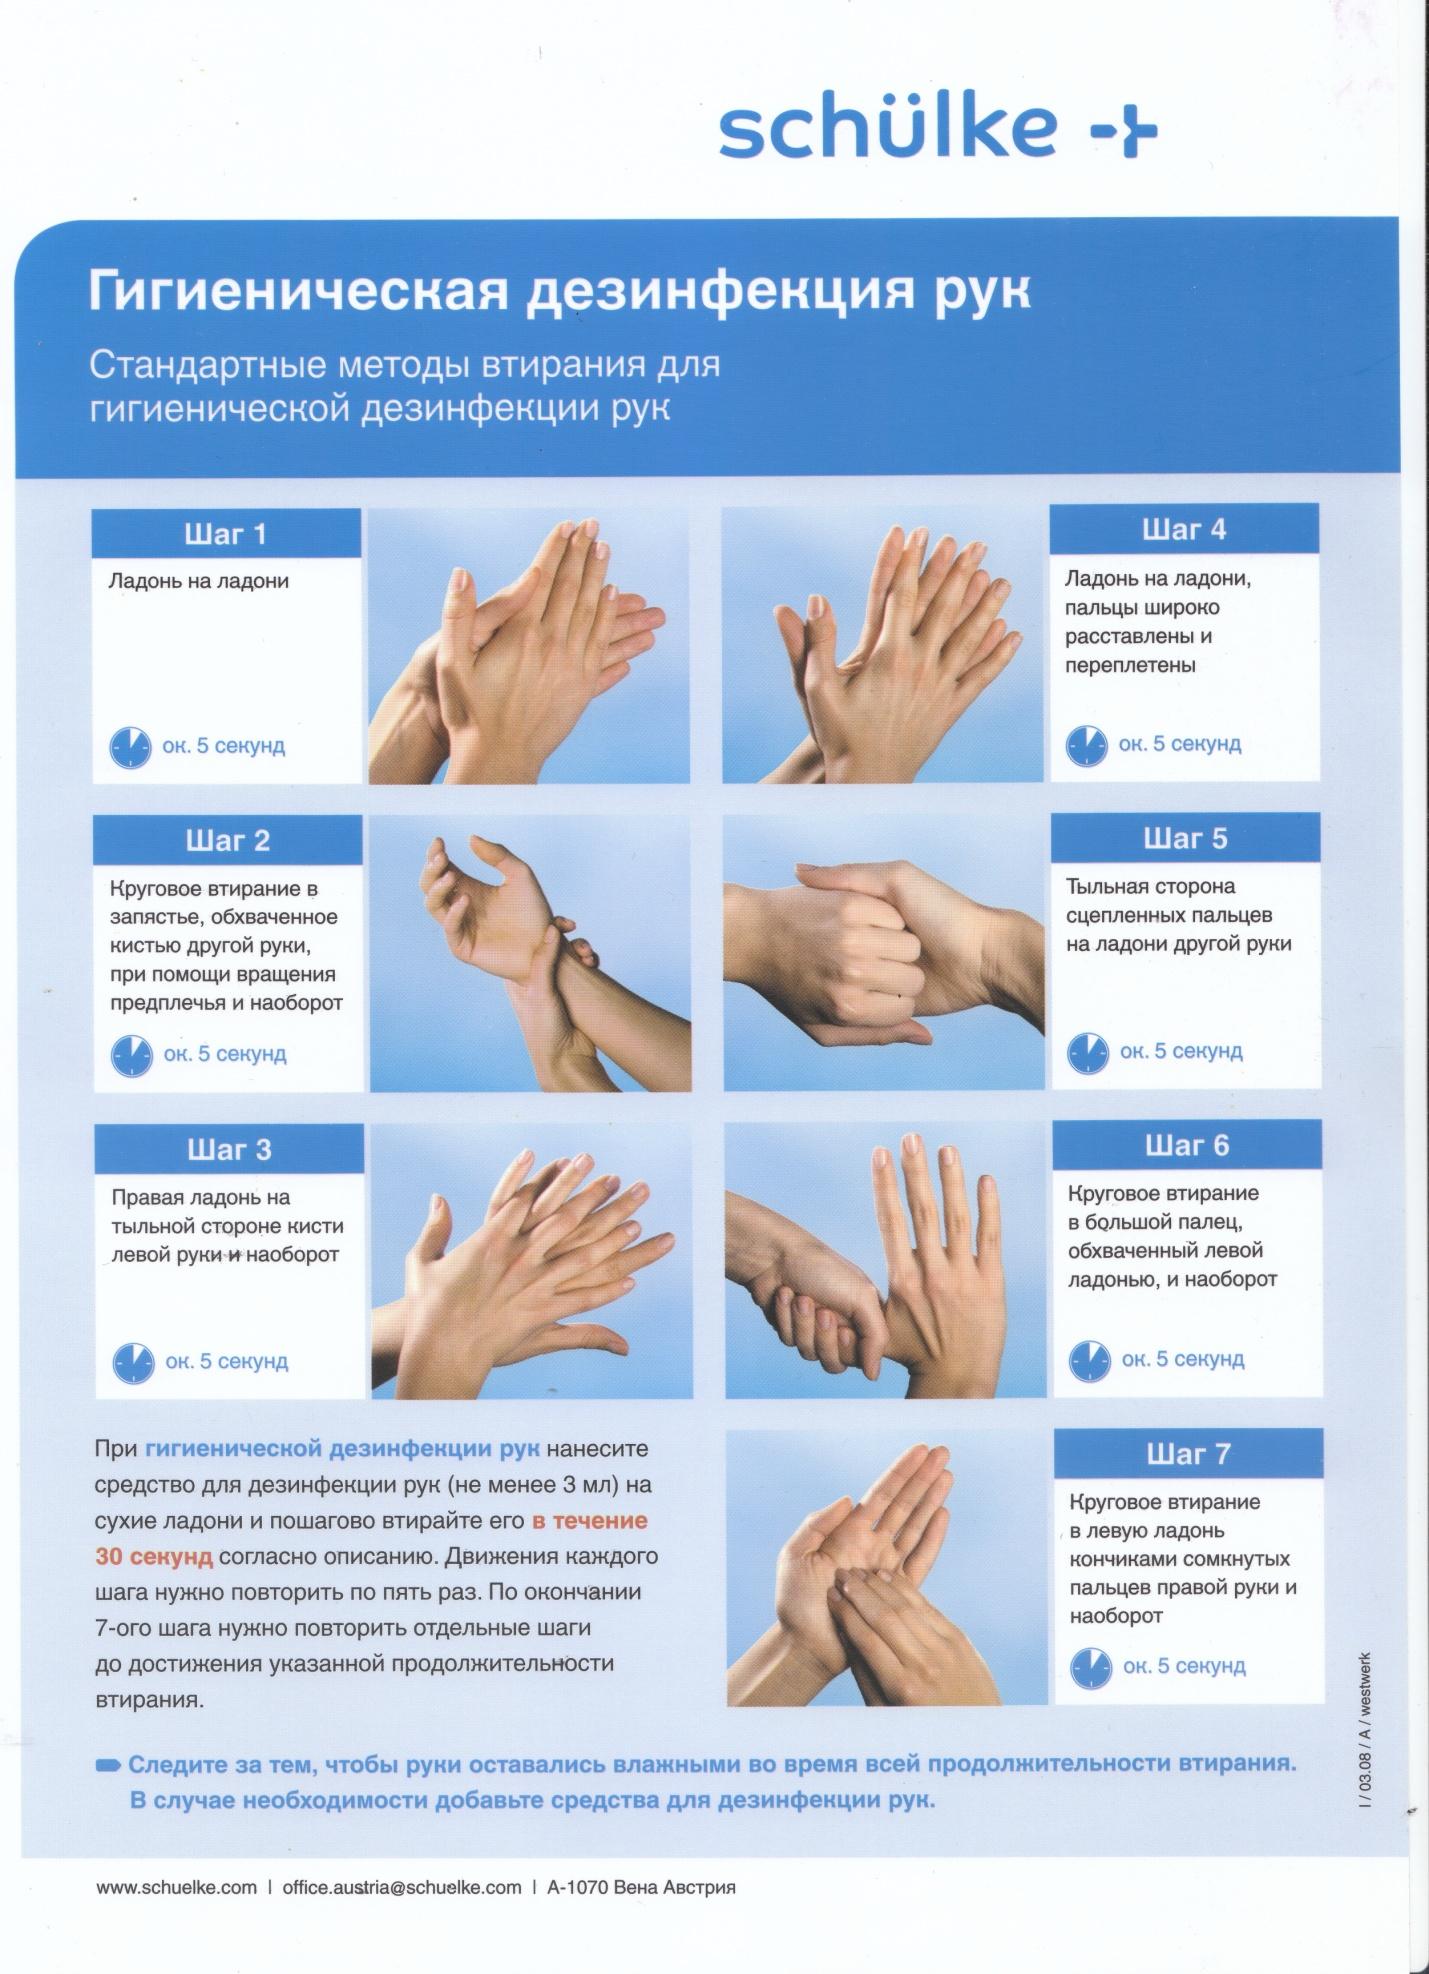 Способы гигиенической обработки рук. Гигиеническое мытье рук Европейский стандарт en-1500. Антисептическая обработка рук en-1500. Европейский стандарт еn-1500. Профессиональная обработка рук Европейский стандарт en-1500.